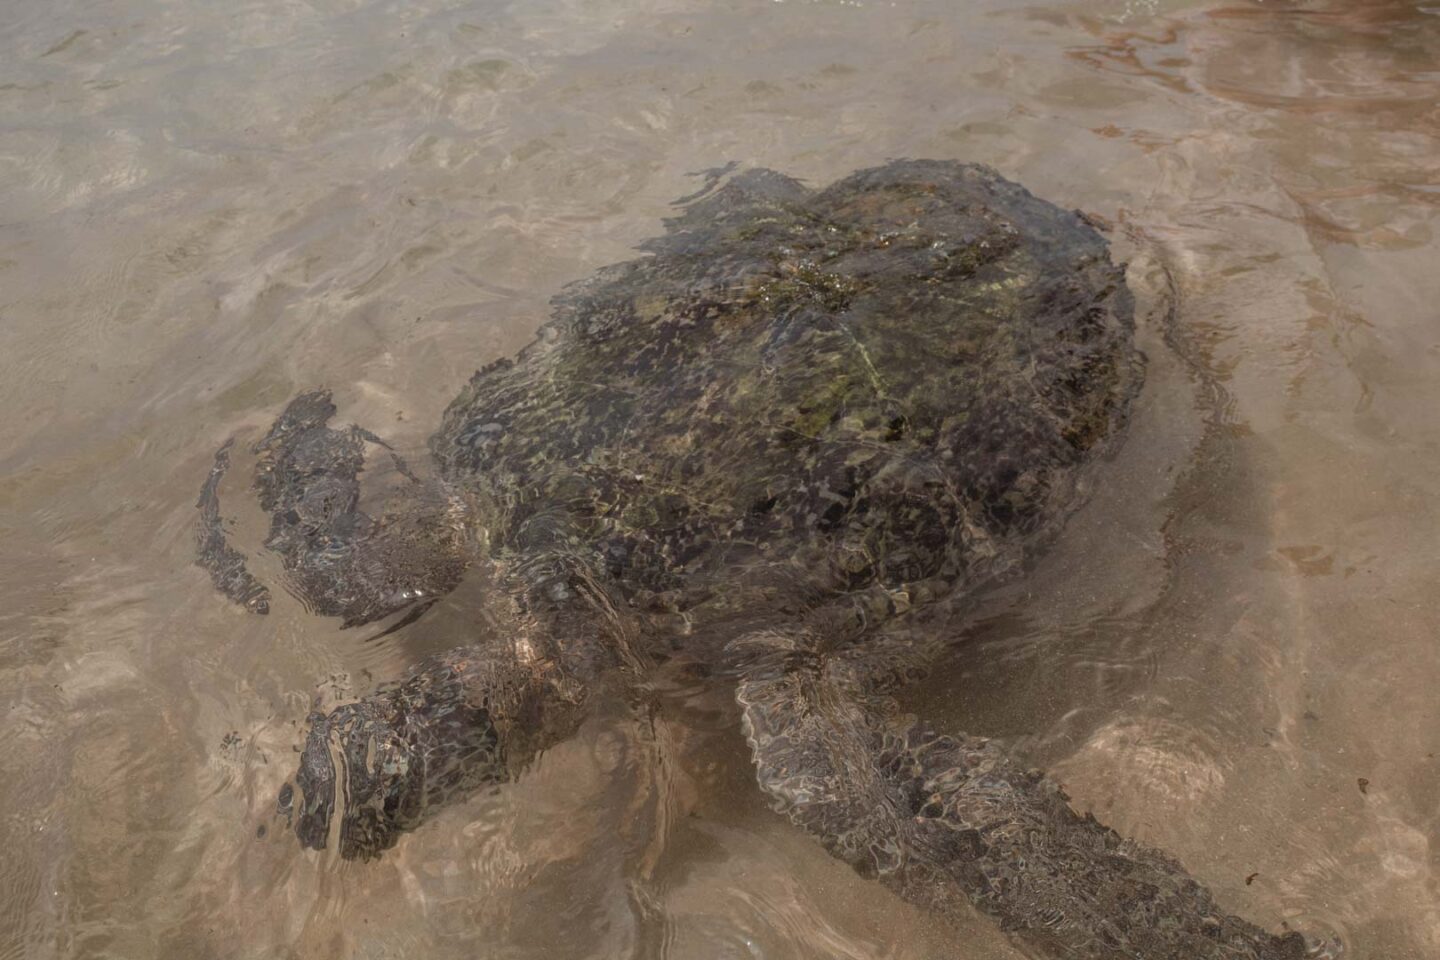 Sea turtle in Asia